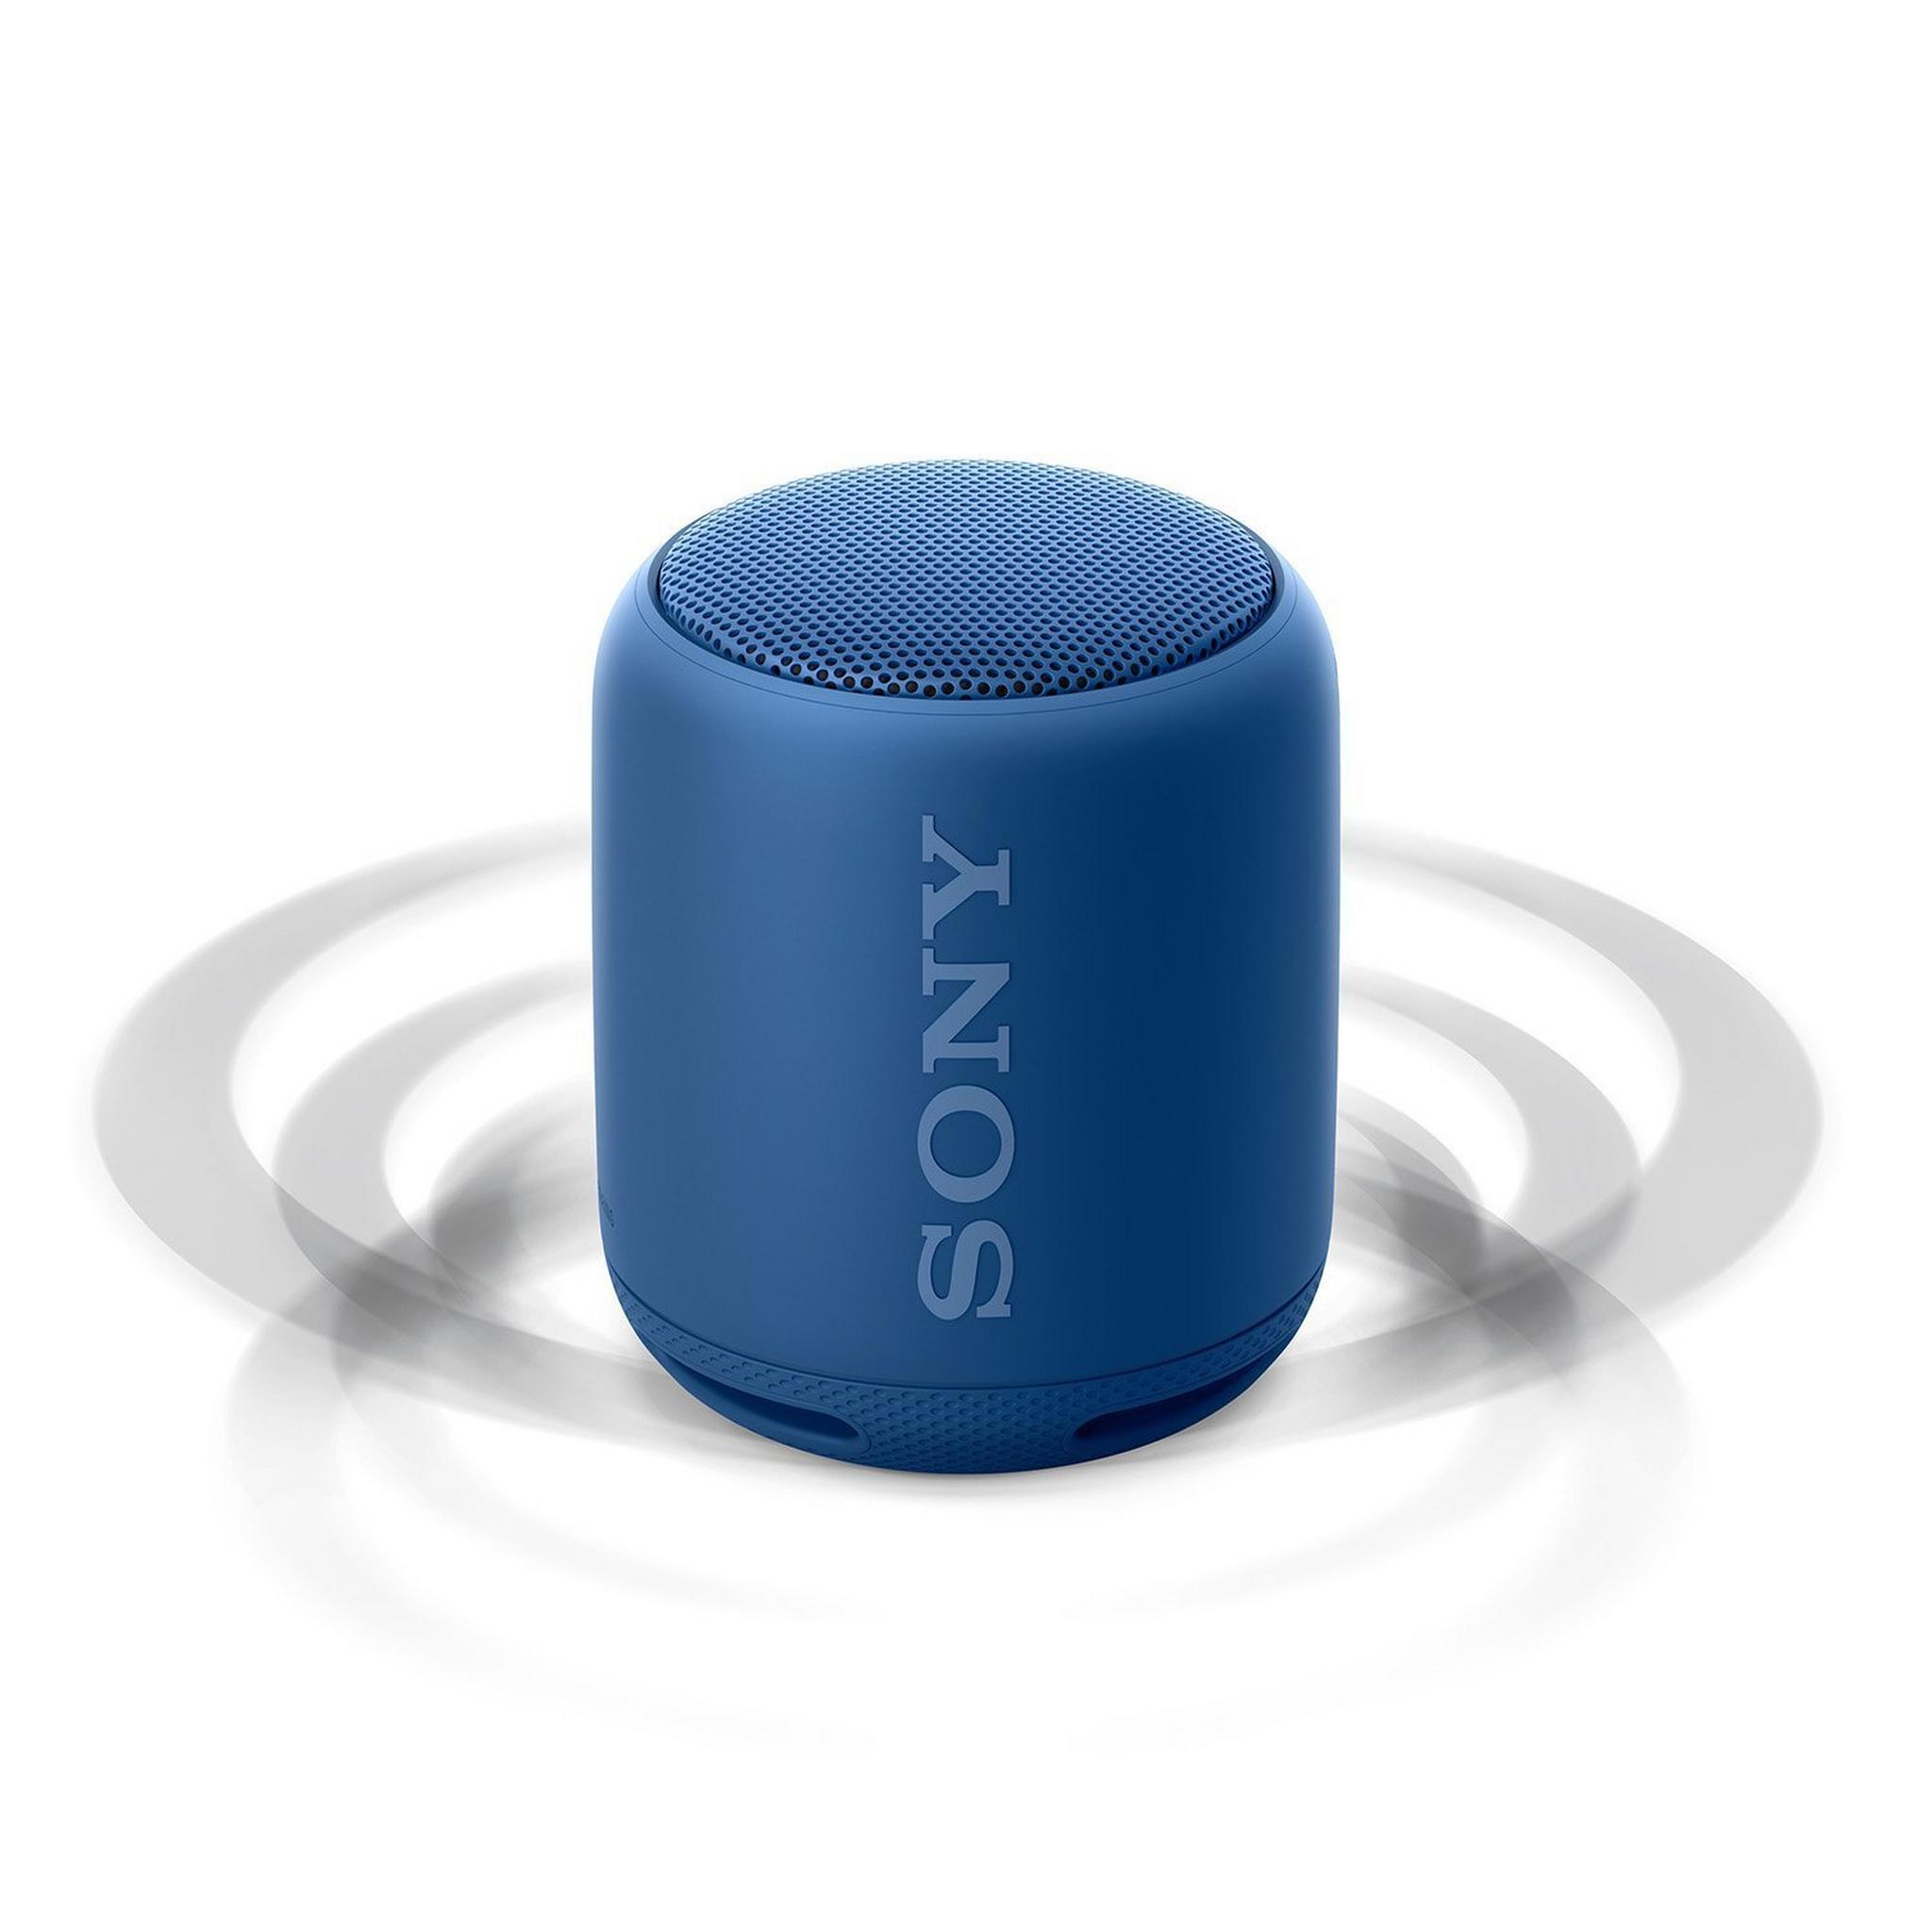 مكبر صوت سوني اللاسلكي المحمول بتقنية البلوتوث - أزرق (SRS-XB10)